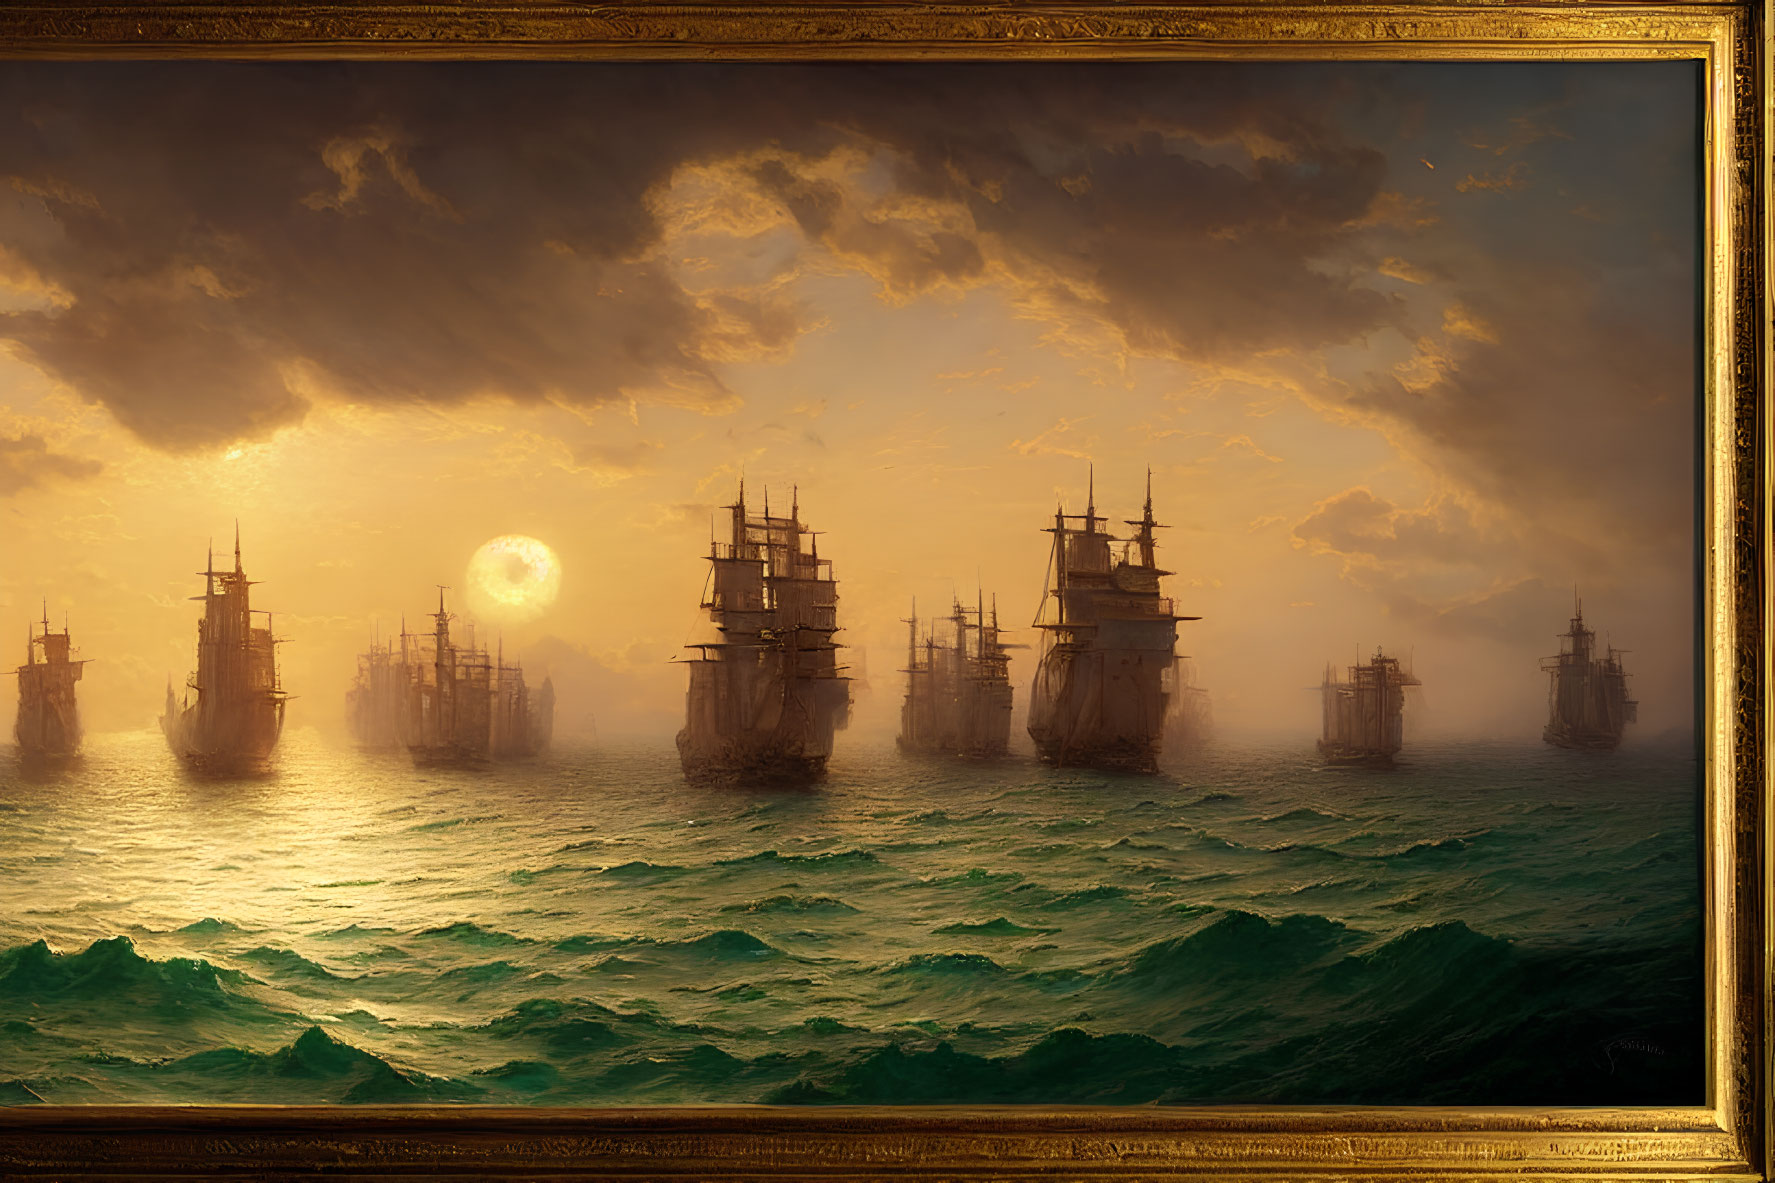 Tall ships sailing on tumultuous sea at sunset